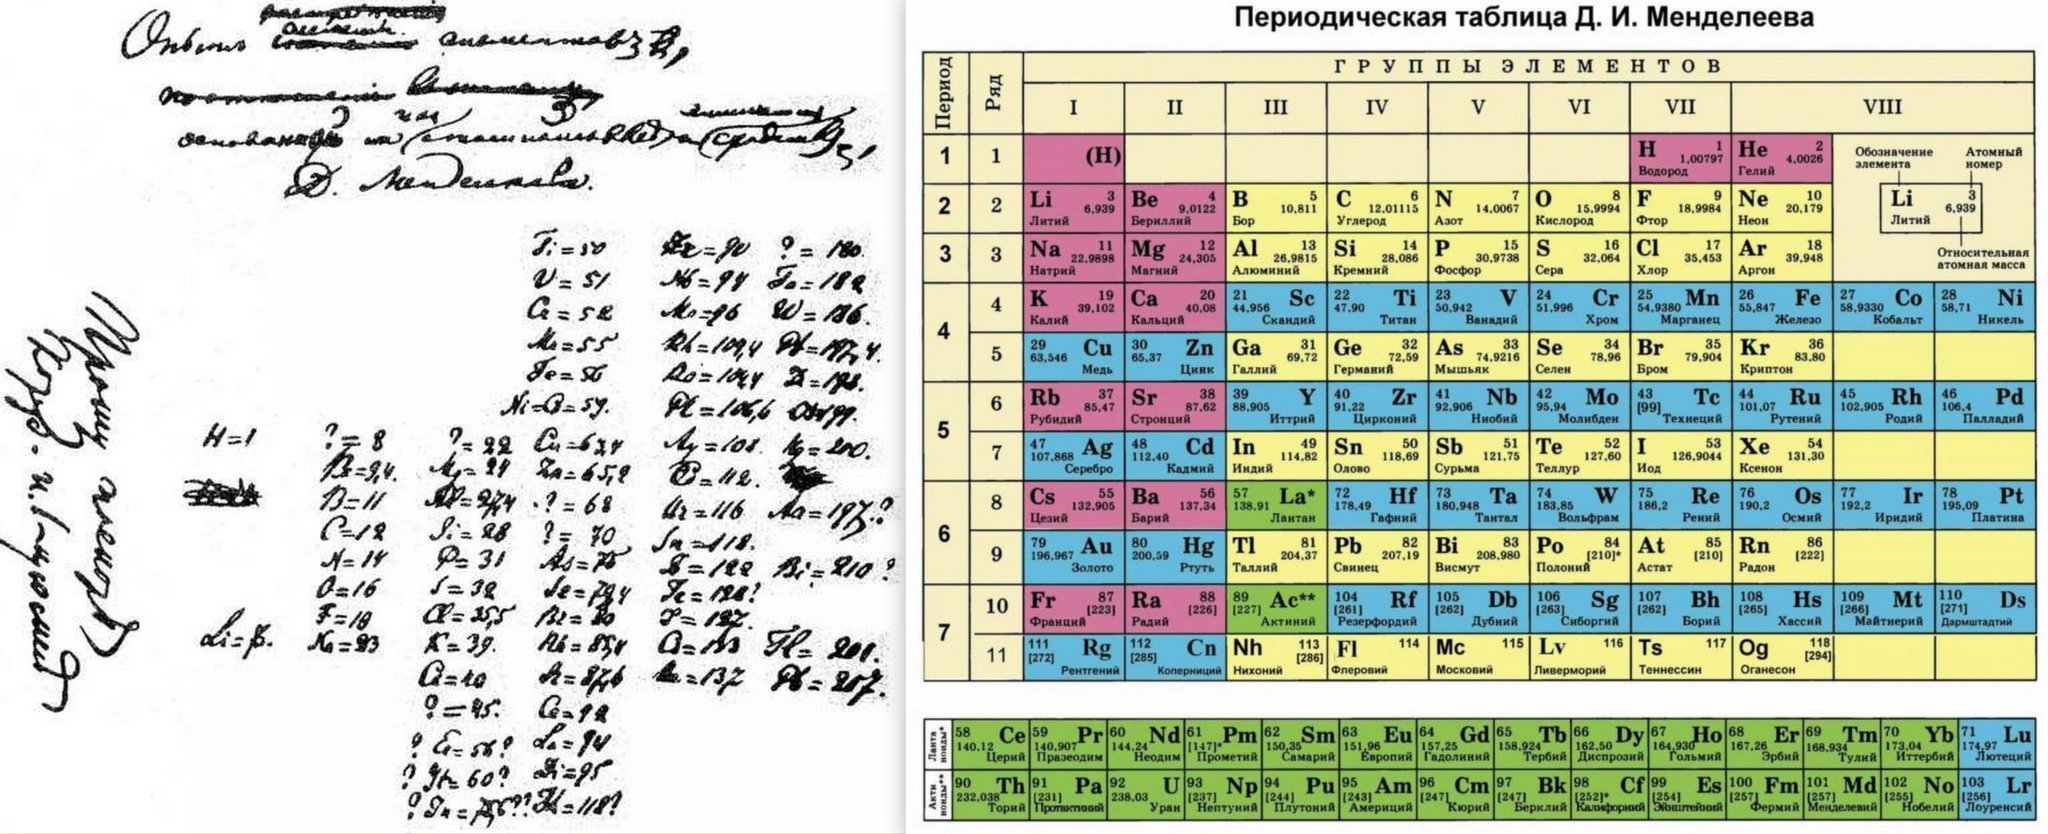 Сколько новых элементов таблицы. Периодическая система Менделеева 1869. Периодическая таблица Менделеева 1869. Первая таблица Менделеева 1869.